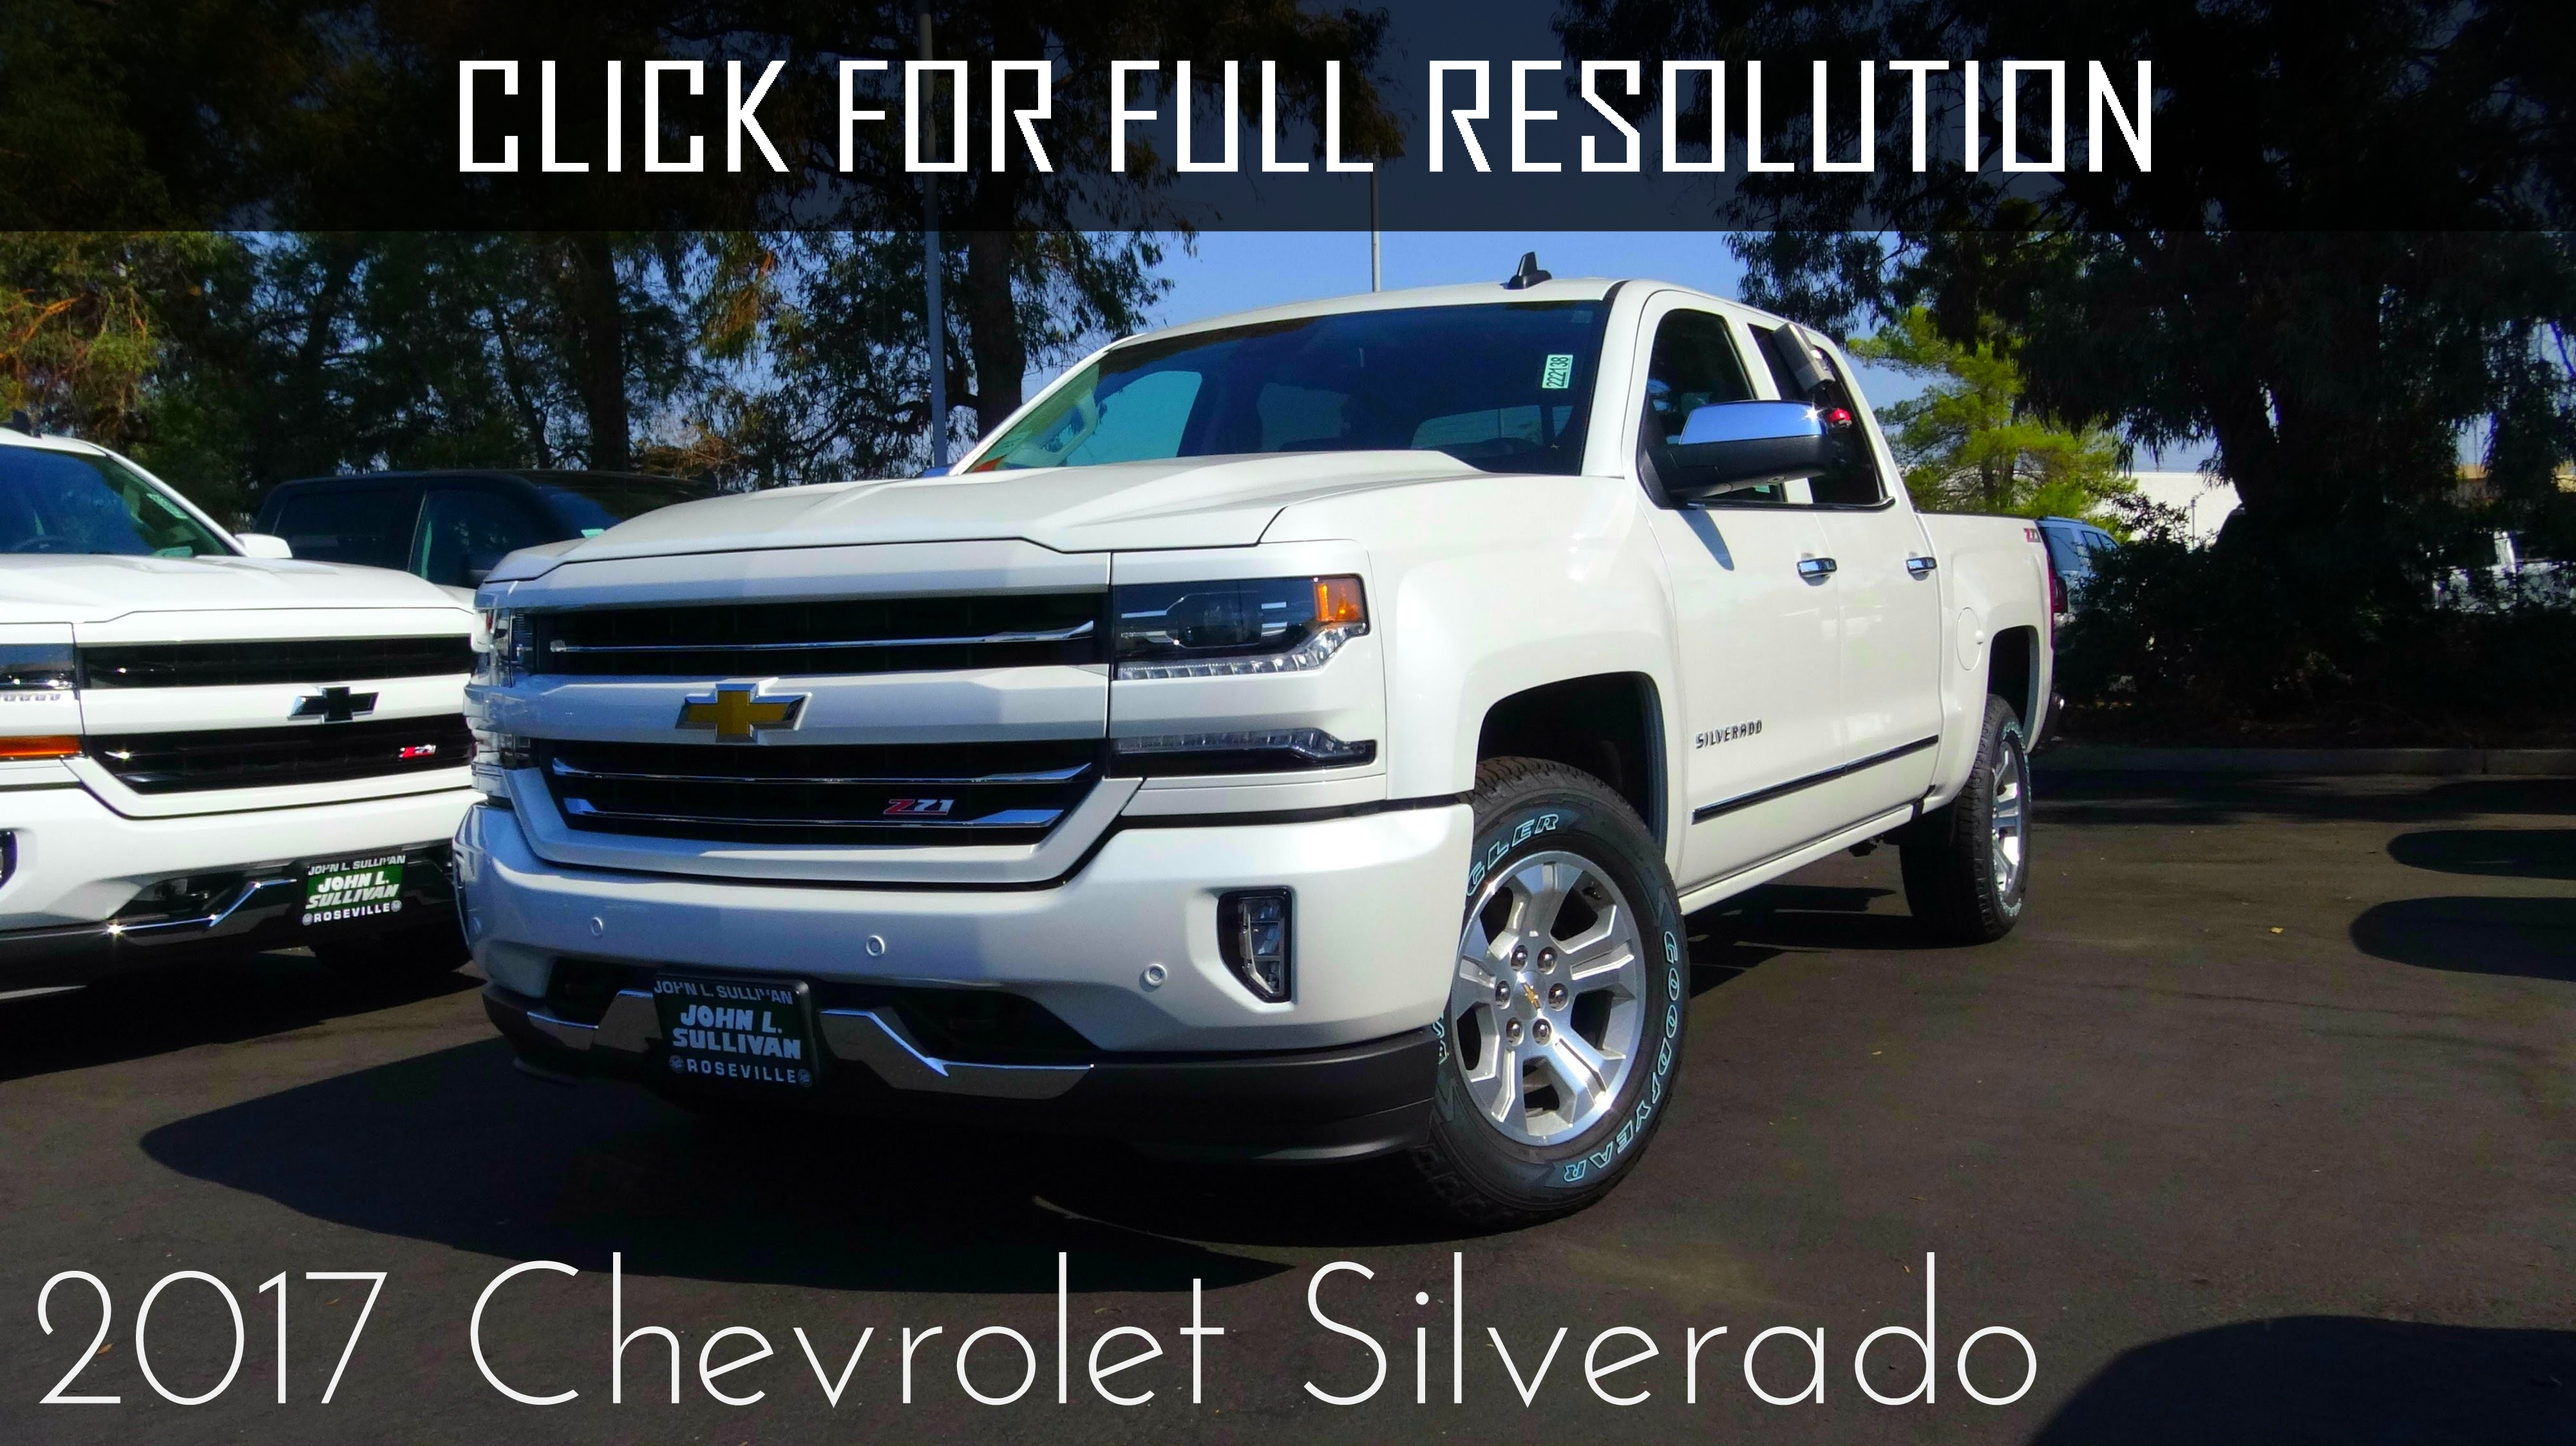 Chevrolet Silverado V8